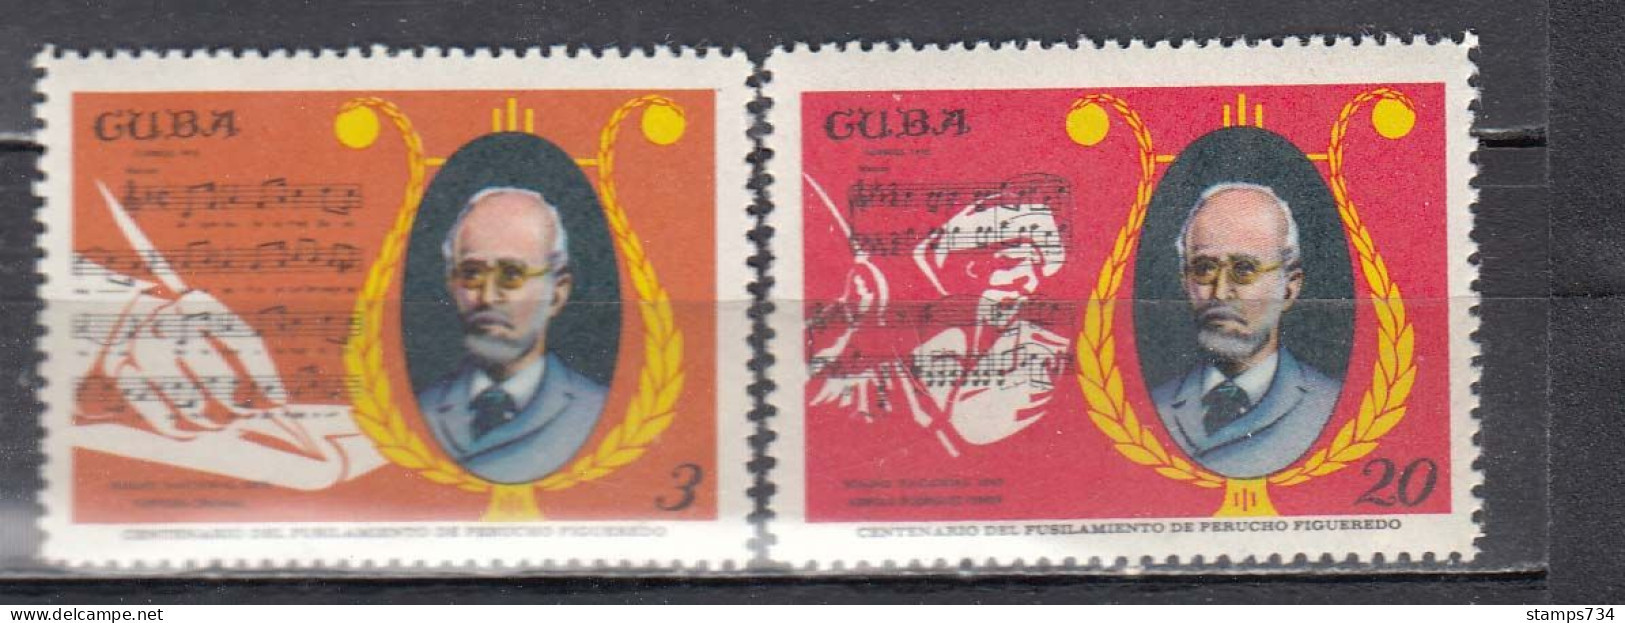 Cuba 1970 - 100th Anniversary Of The Death Of Perucho Figueredo, Mi-Nr. 1616/17, MNH** - Nuovi